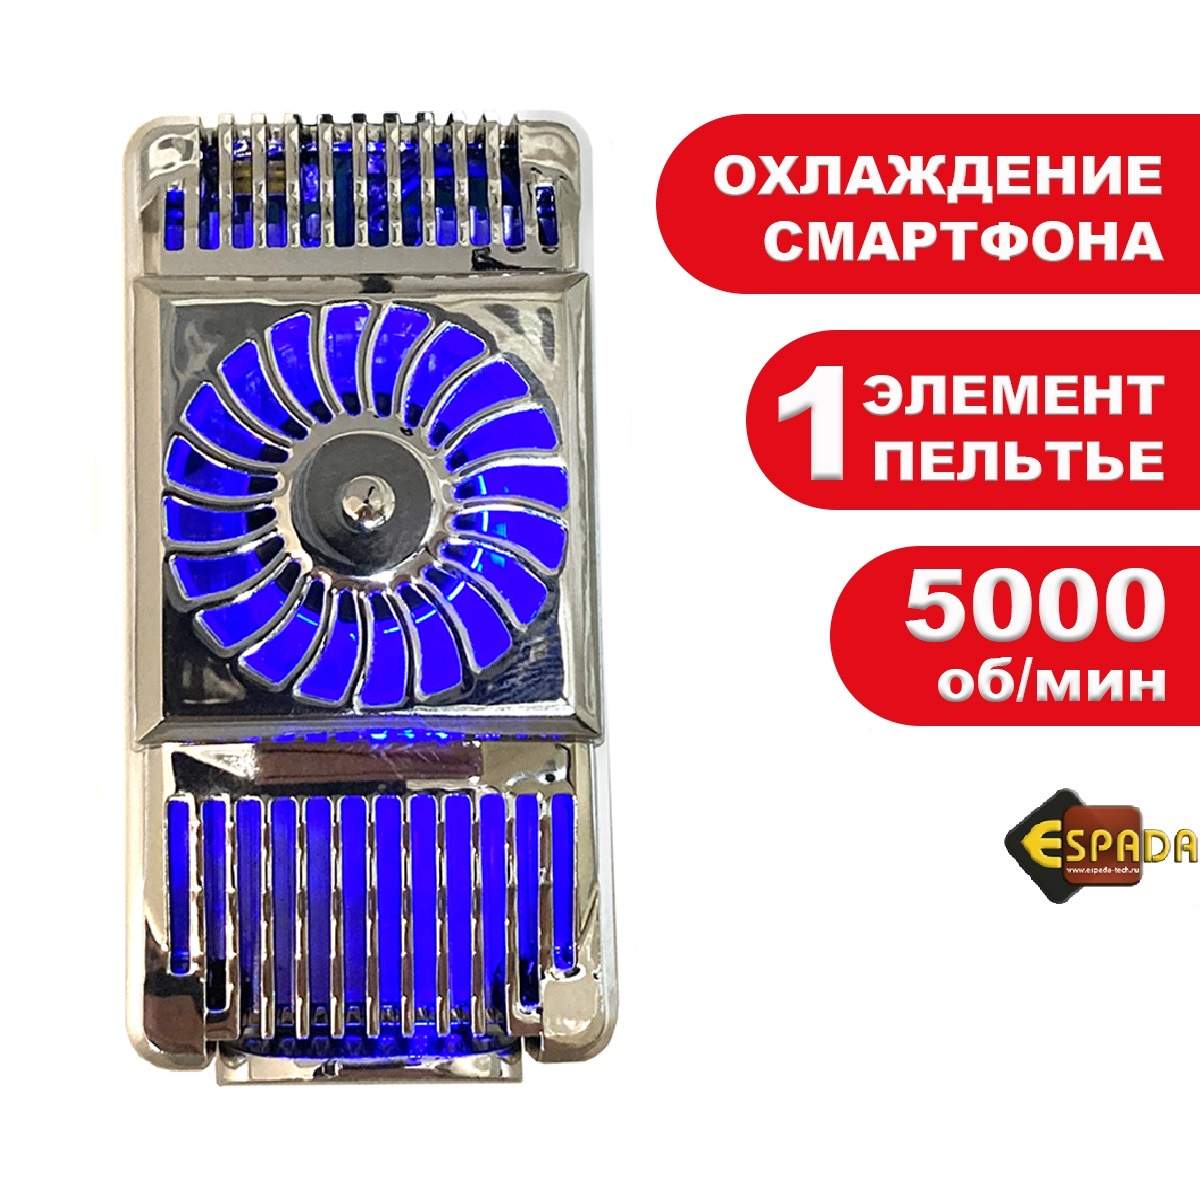 Устройство охлаждения смартфона Ecu3, Espada/1 элемент Пельтье, купить в Москве, цены в интернет-магазинах на Мегамаркет